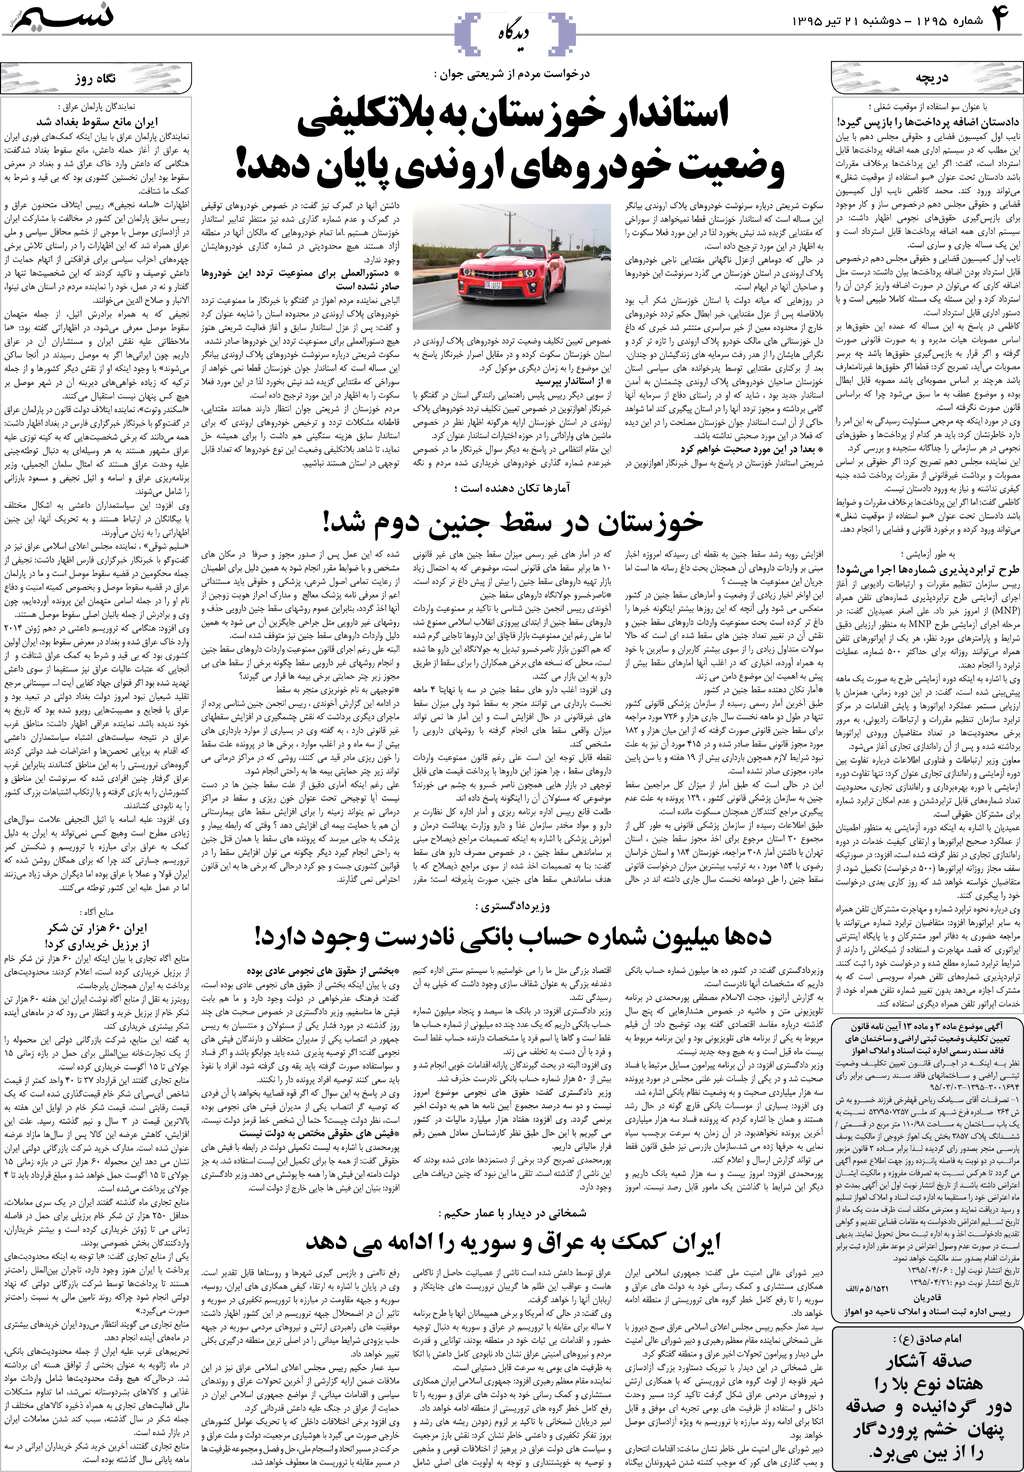 صفحه دیدگاه روزنامه نسیم شماره 1295